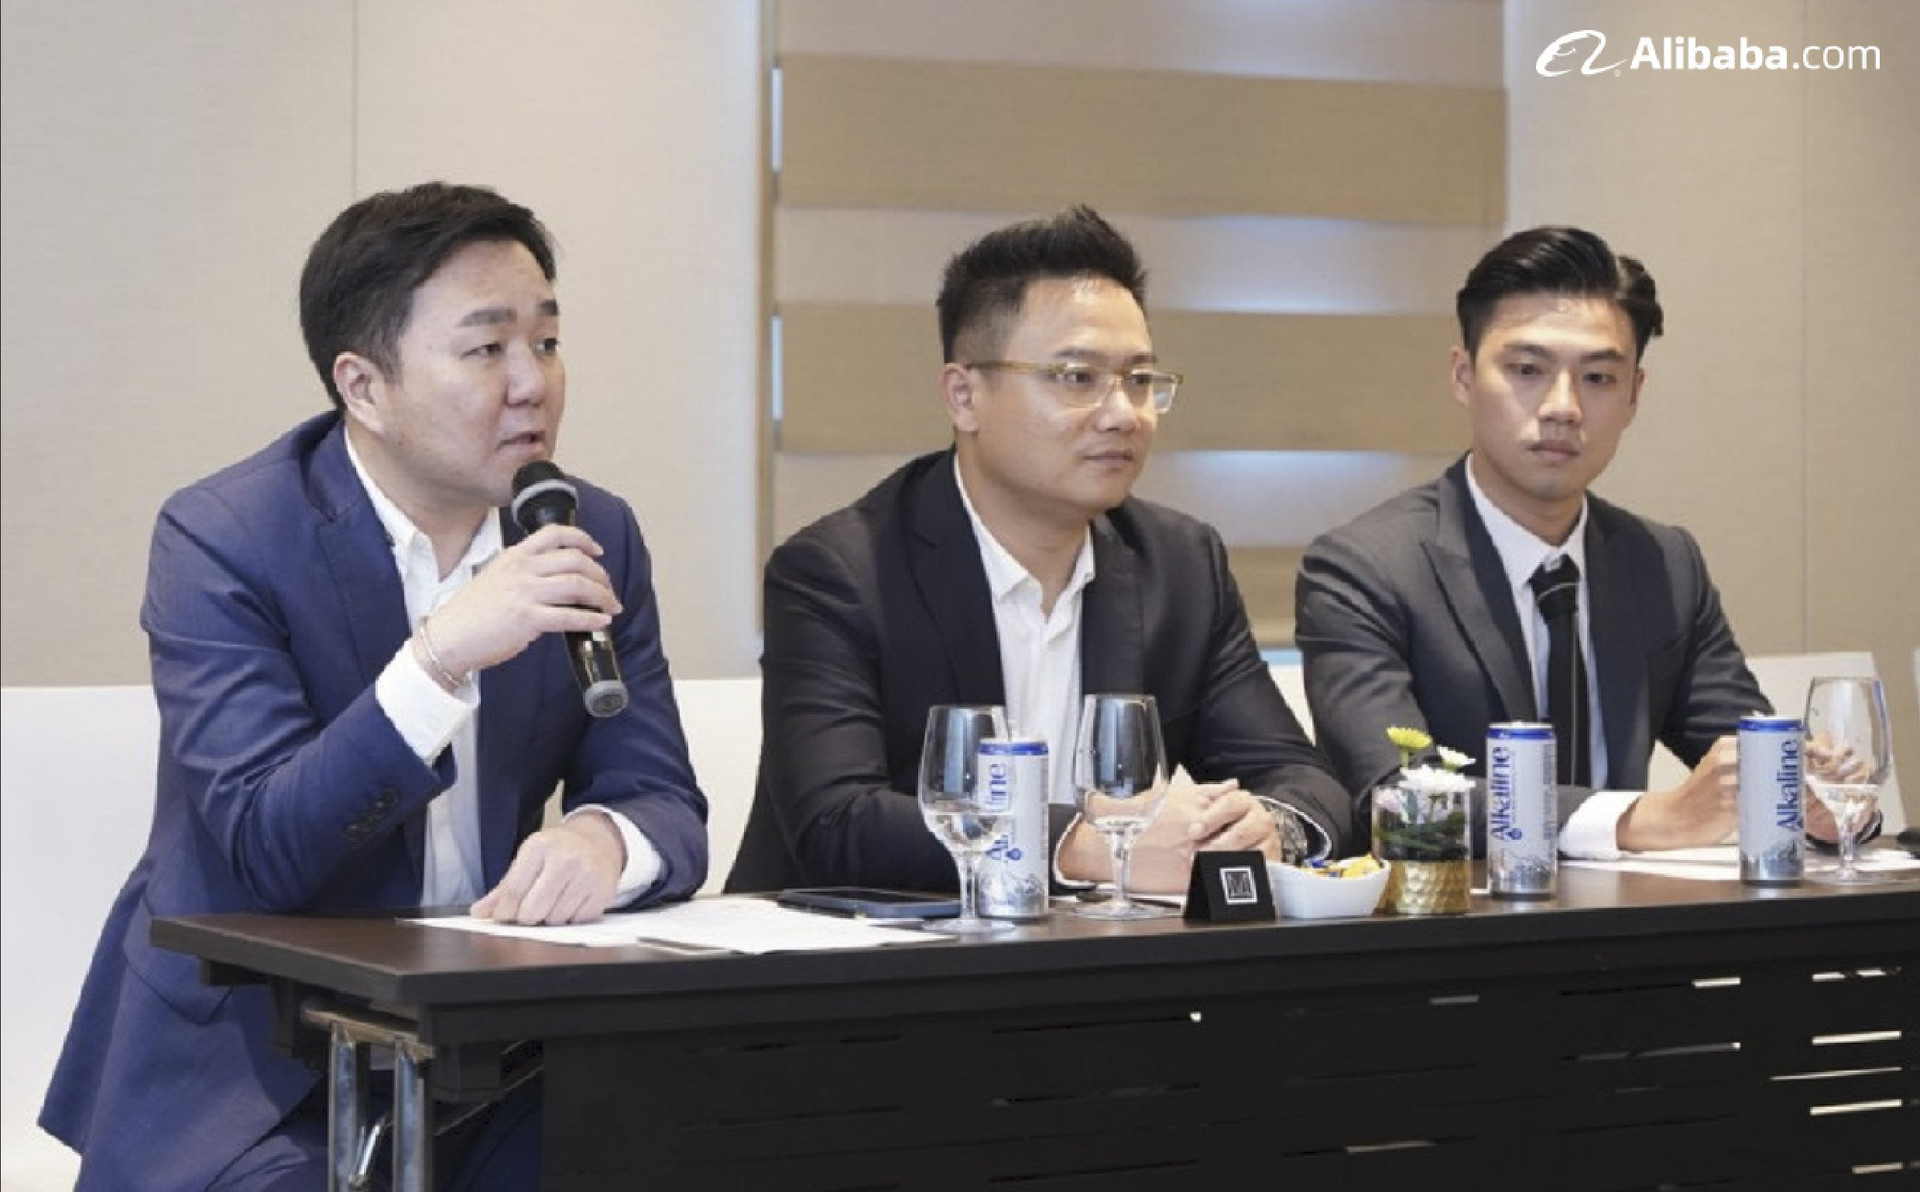 Alibaba.com đẩy mạnh mở các trung tâm sản xuất mới tại Việt Nam, hé lộ những ngành có cơ hội từ hiện tượng giảm tồn kho tại Mỹ - Ảnh 2.